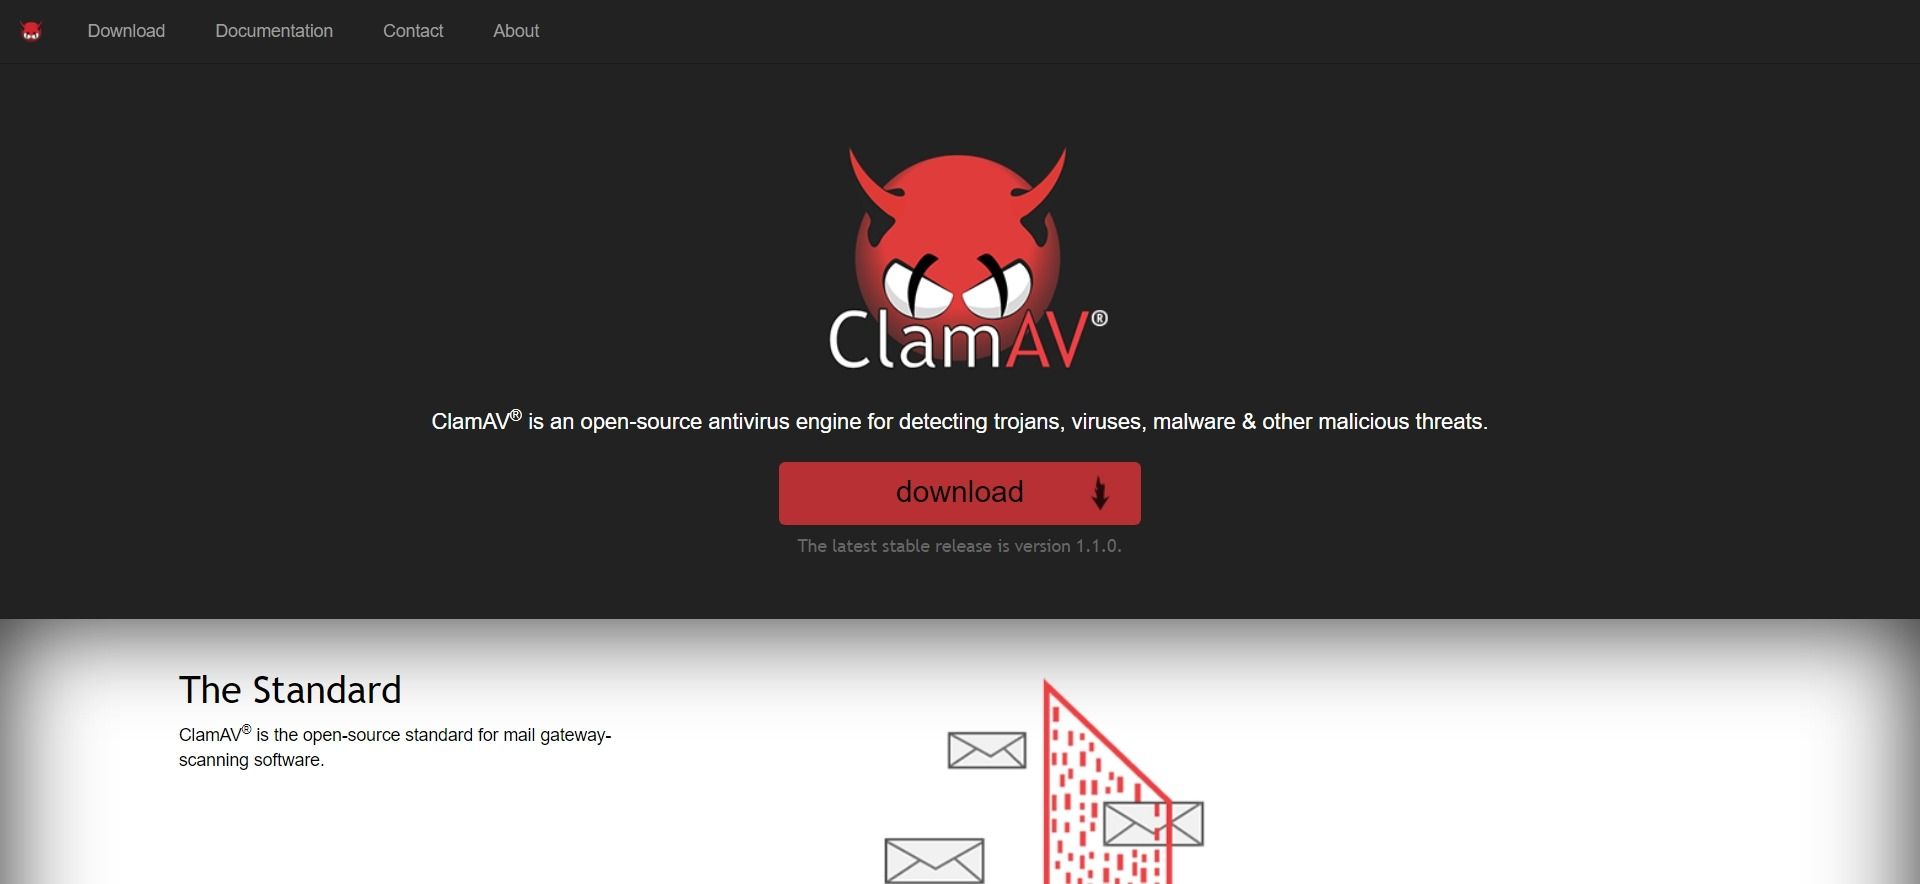 ClamAV's homepage